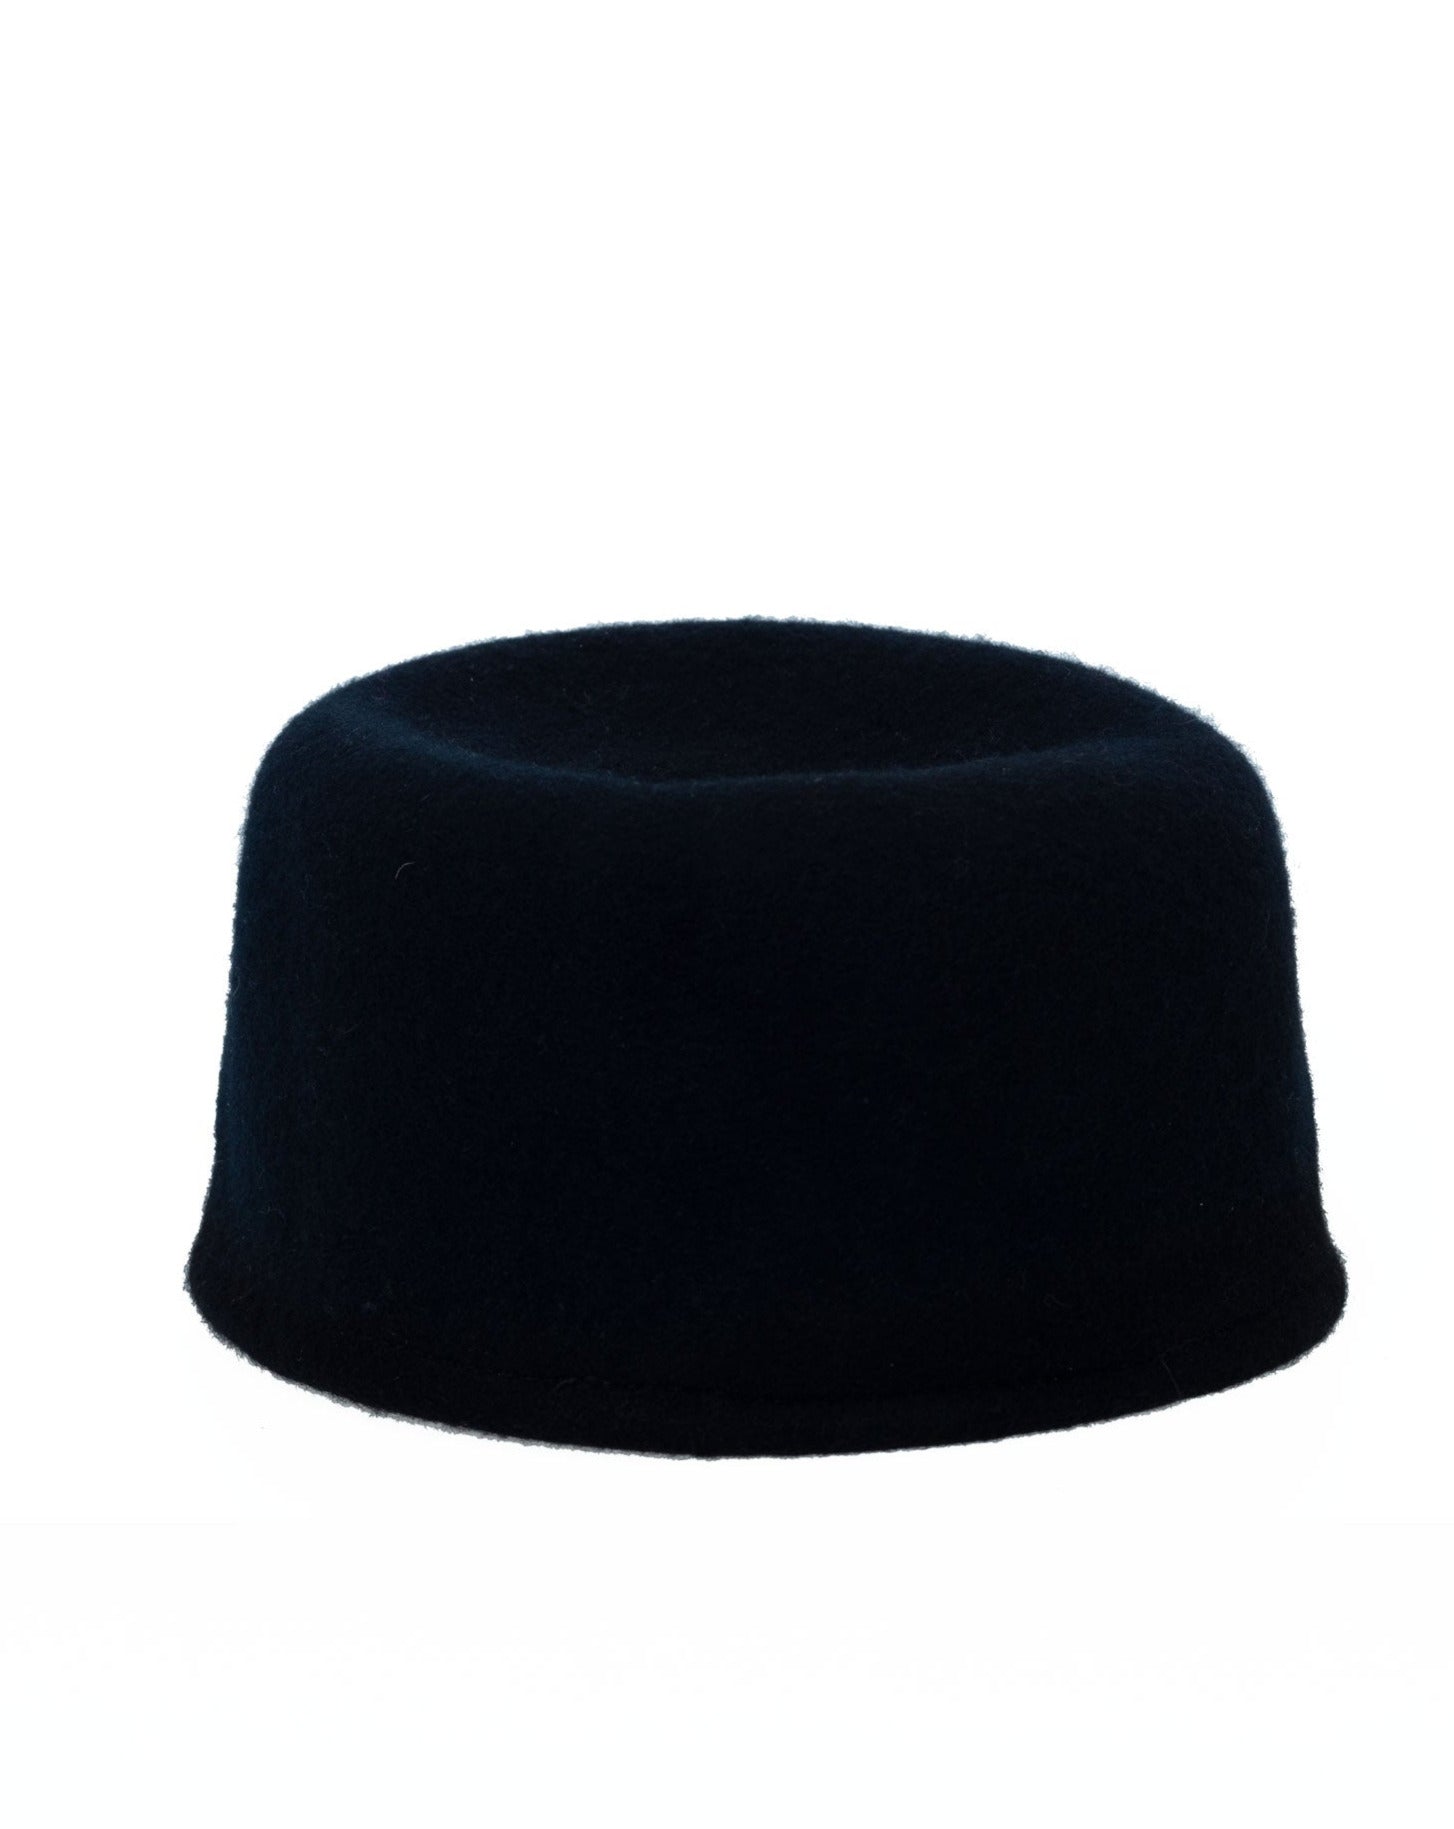 Janelle-Pillbox-Hat-in-Black-Felt--by-Object-_-Dawn.jpg